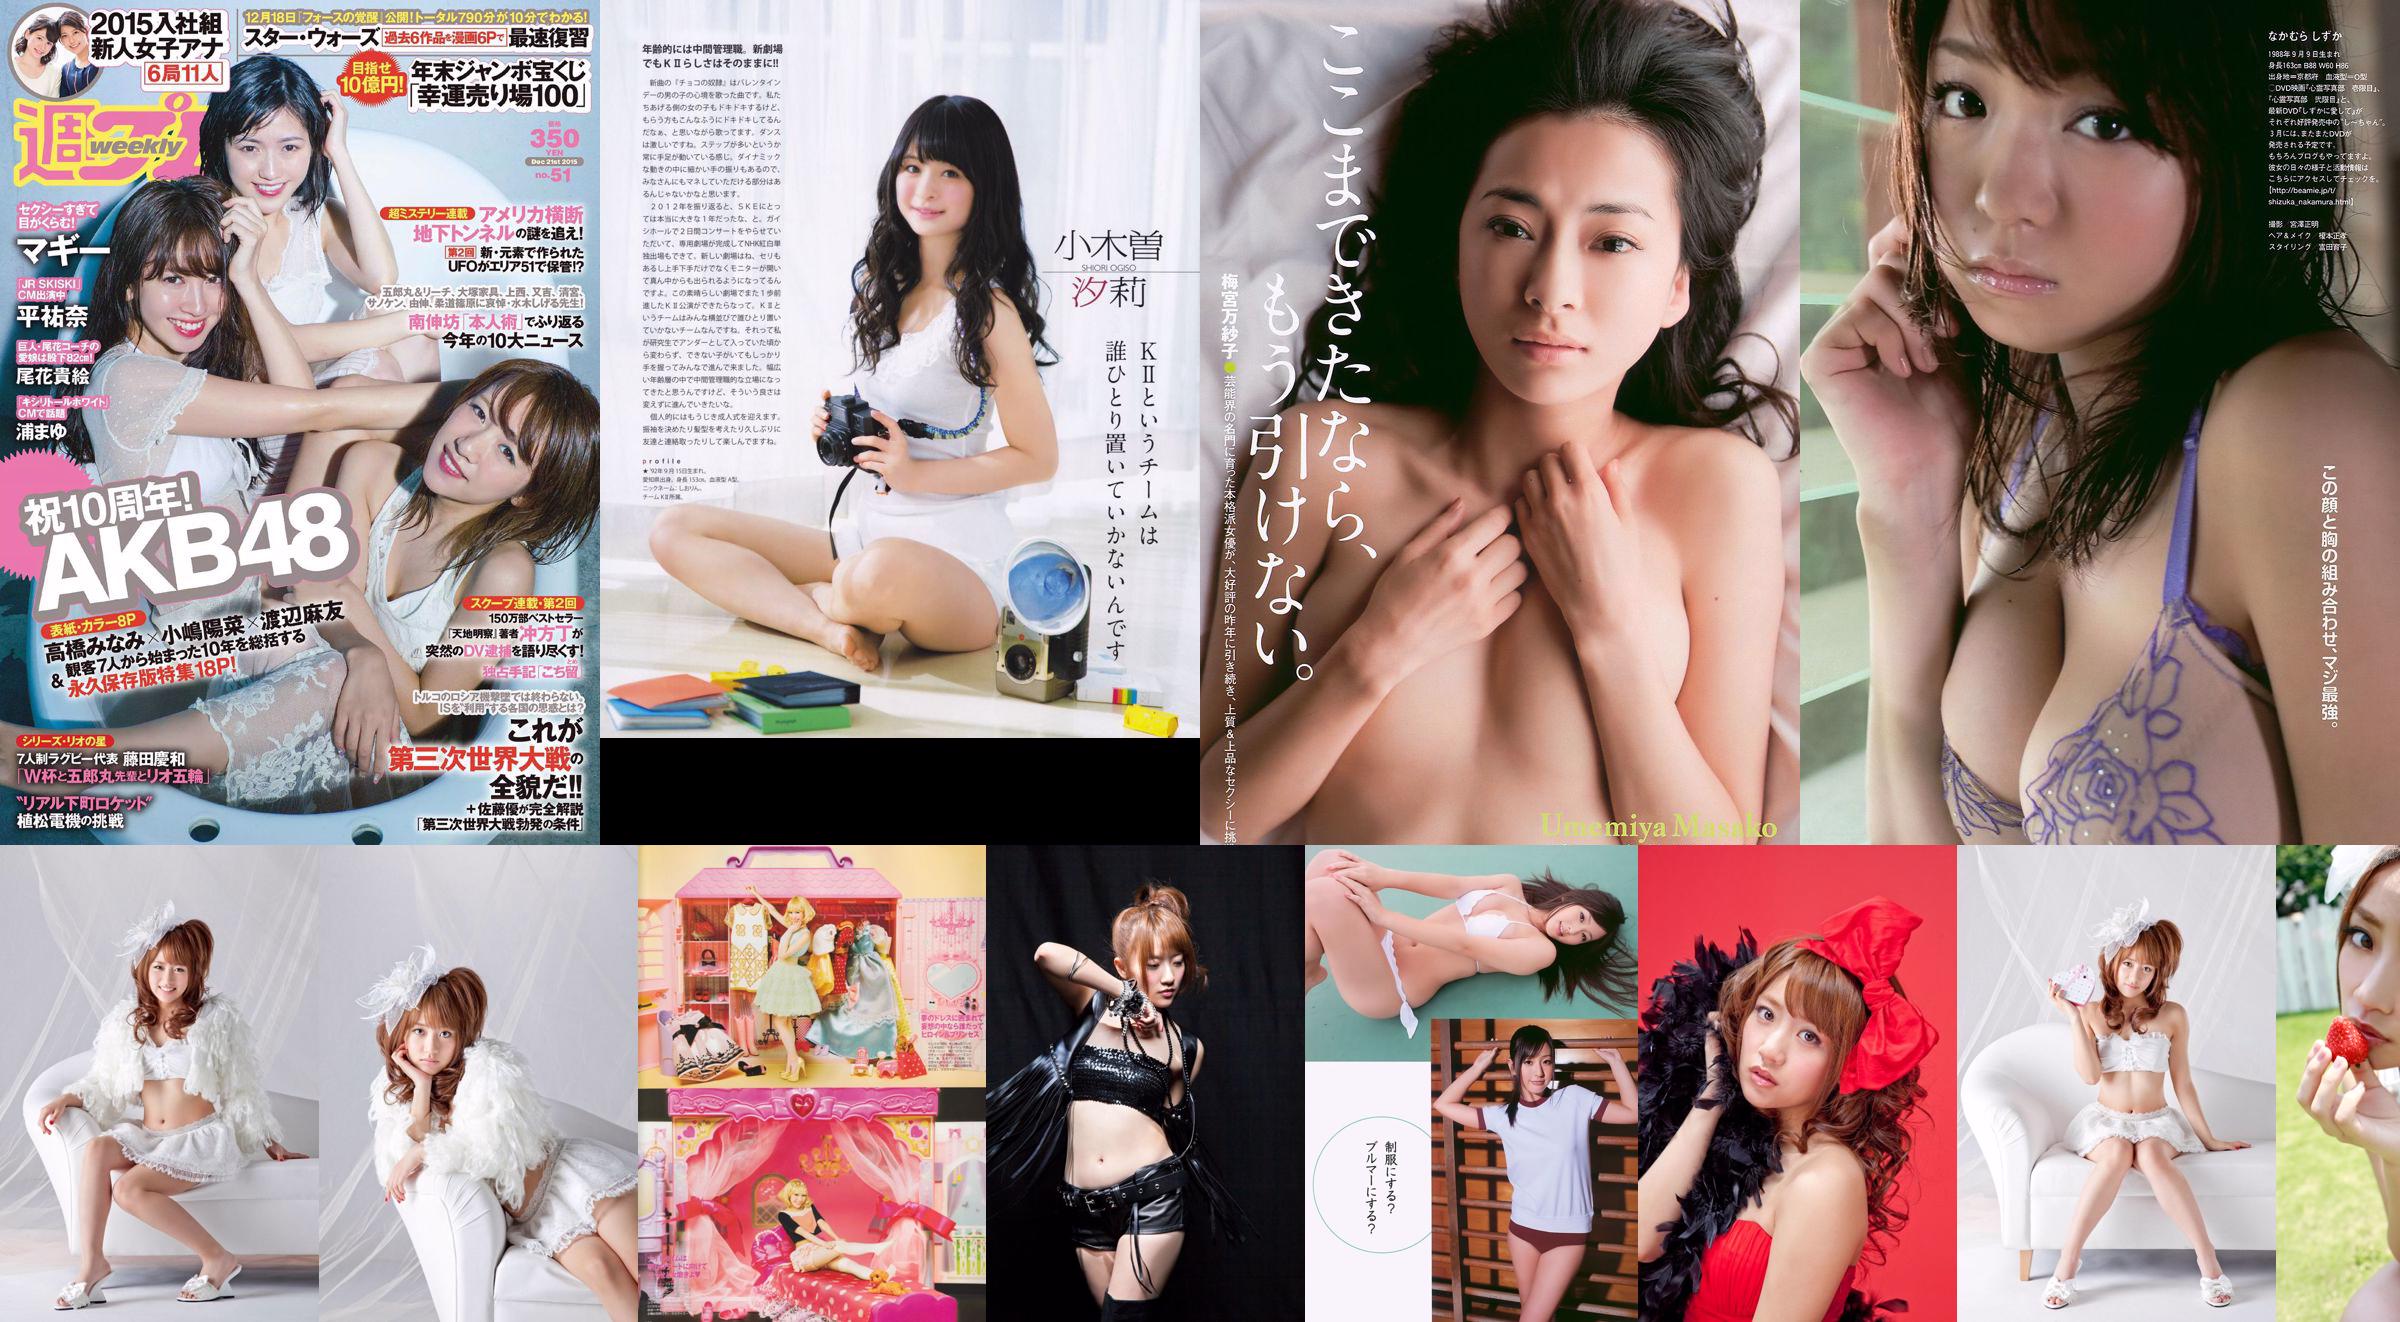 Minami Takahashi Haruna Kojima Mayu Watanabe Maggie Takae Obana Yuna Taira Mayu Ura Mitadera En [Weekly Playboy] 2015 Foto No 51 No.41a59f Página 1